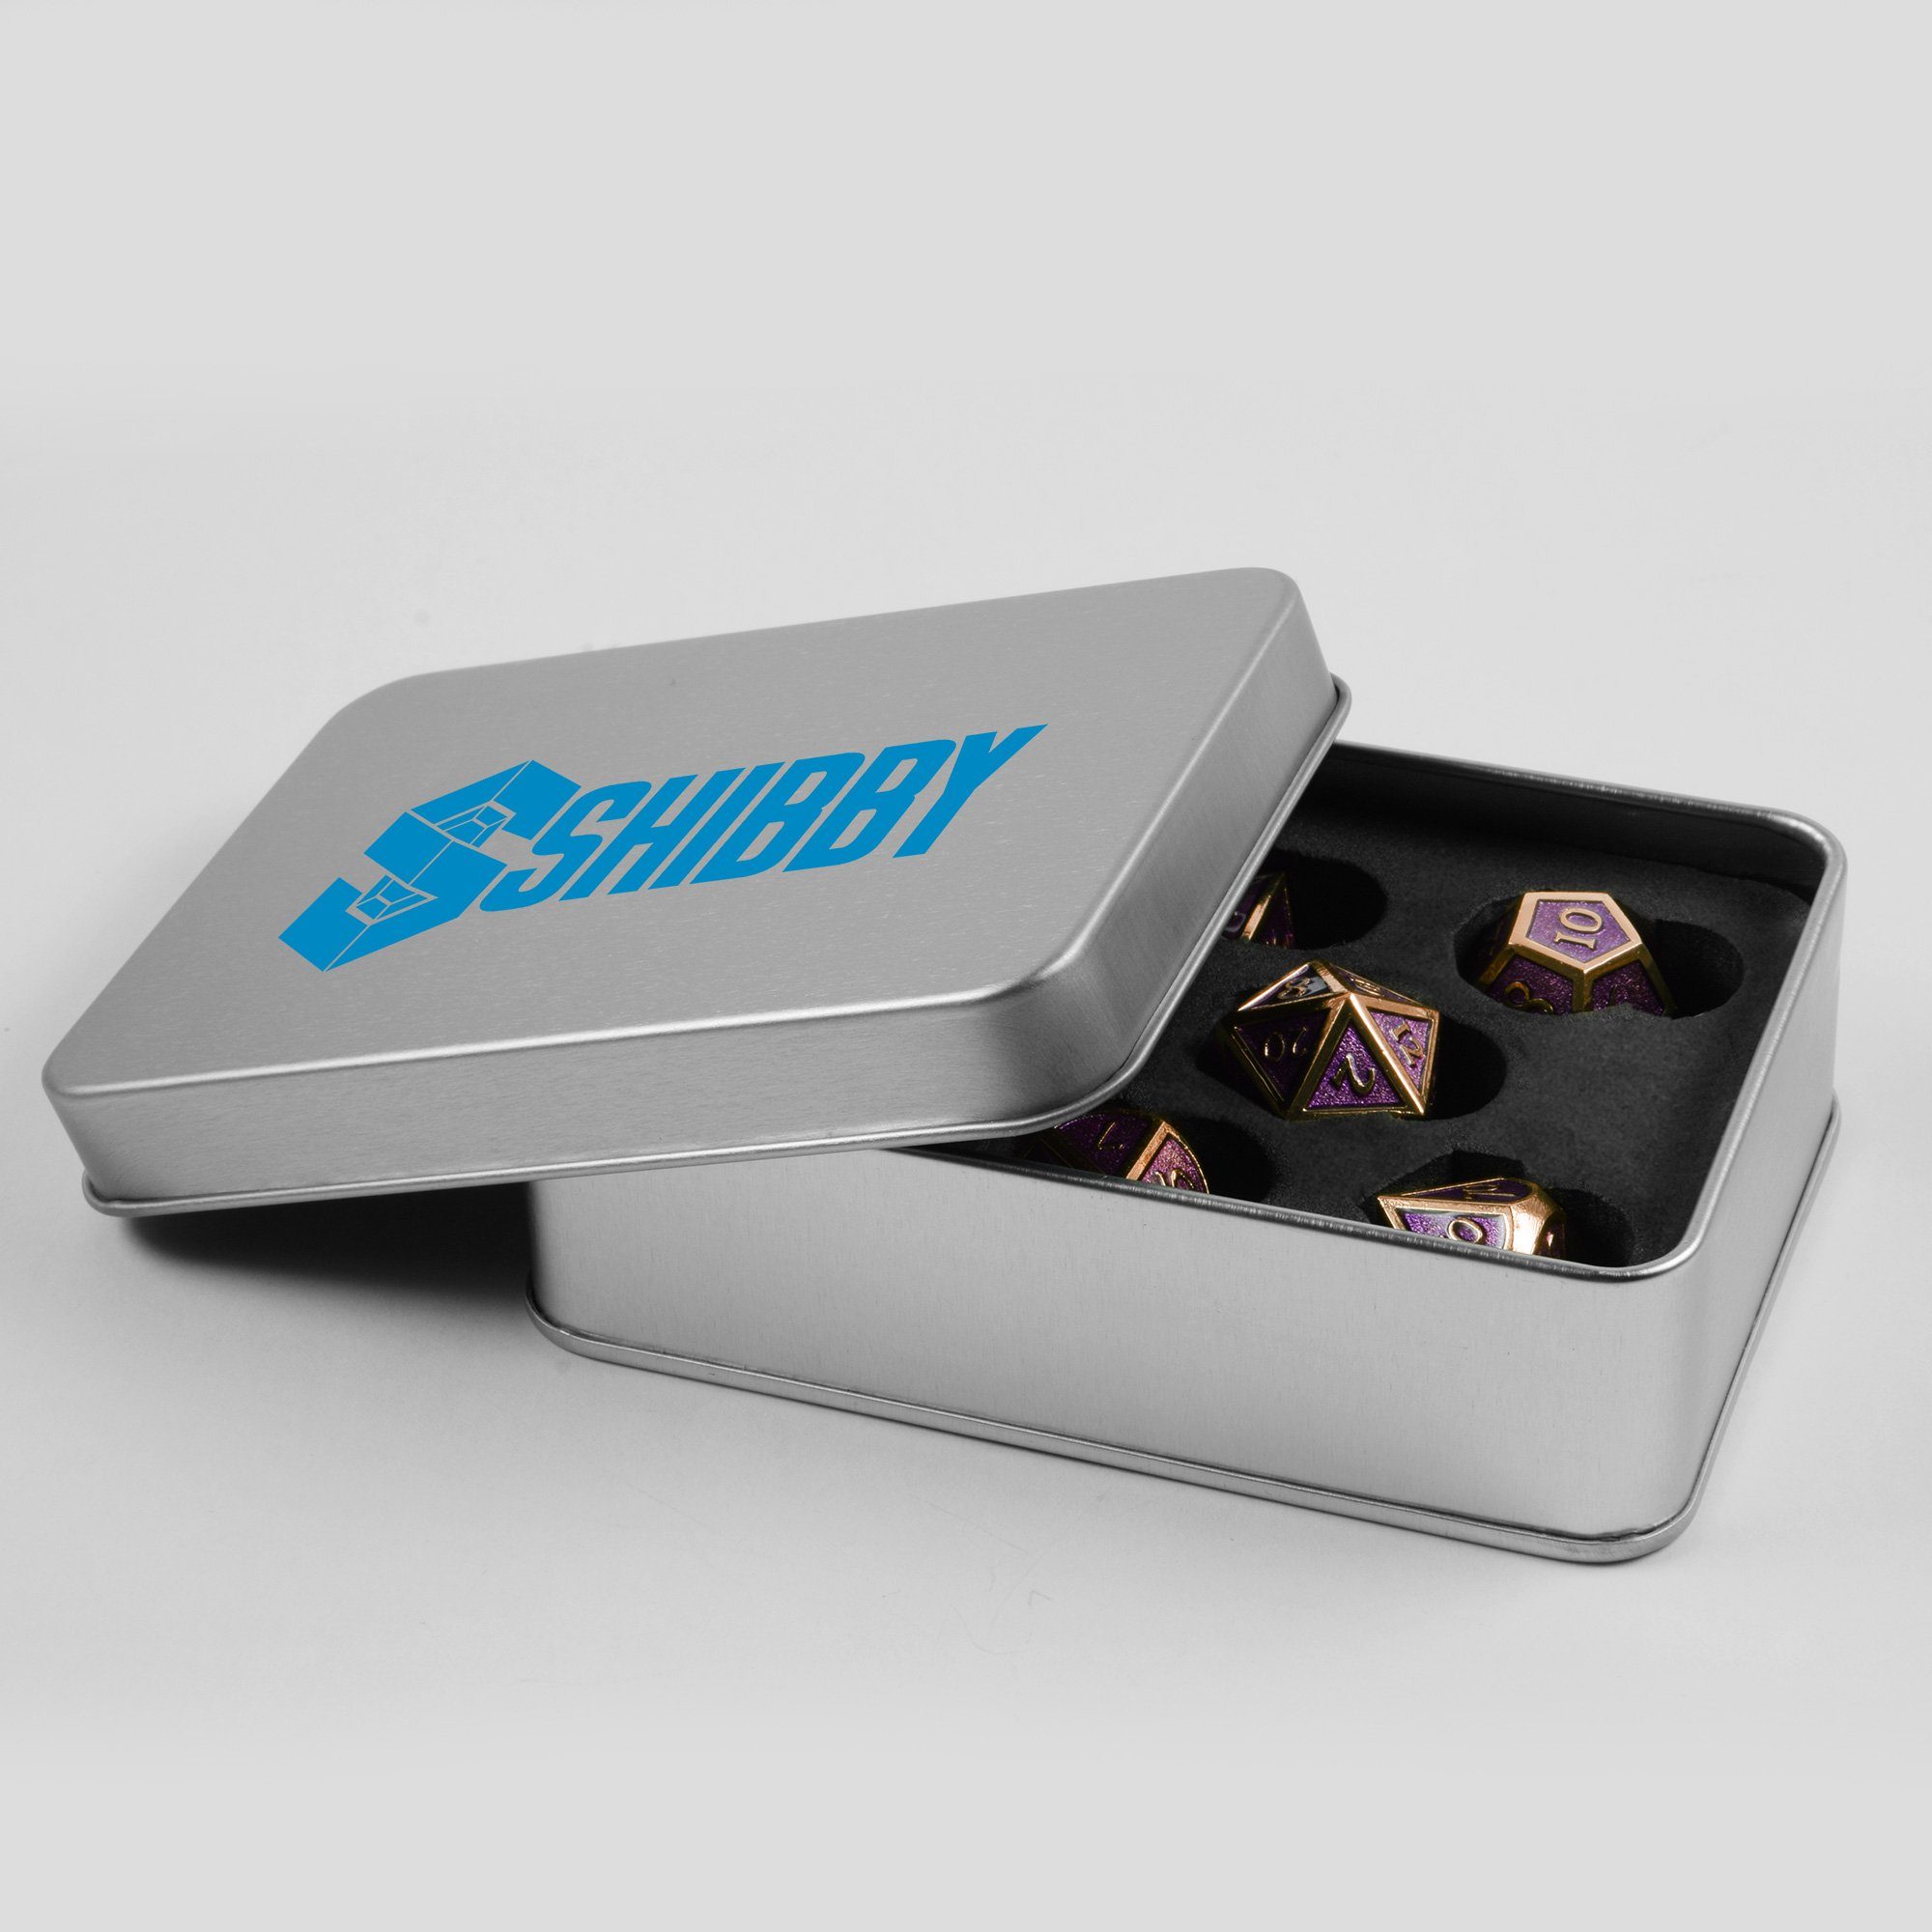 Steampunk inkl. SHIBBY polyedrische in Rosé/Gold 7 Metall-DND-Würfel Spielesammlung, Optik, Aufbewahrungsbox